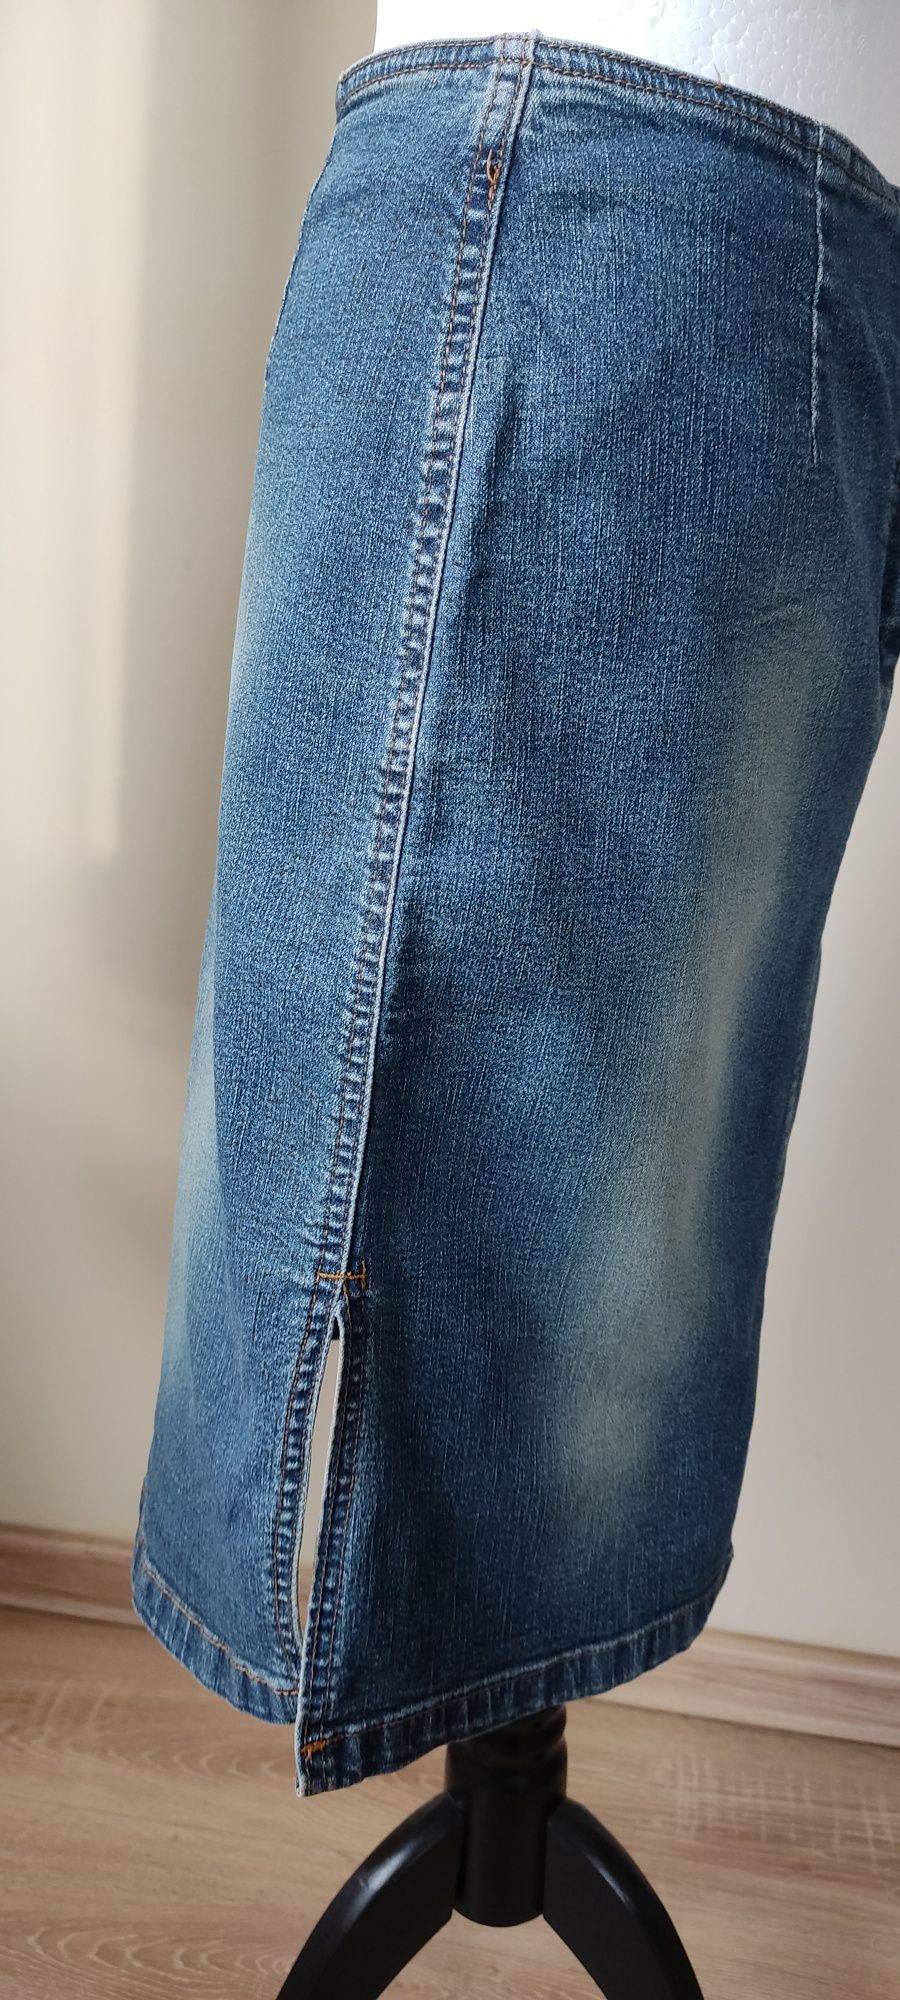 Spódnica jeansowa niebieska rozm.M